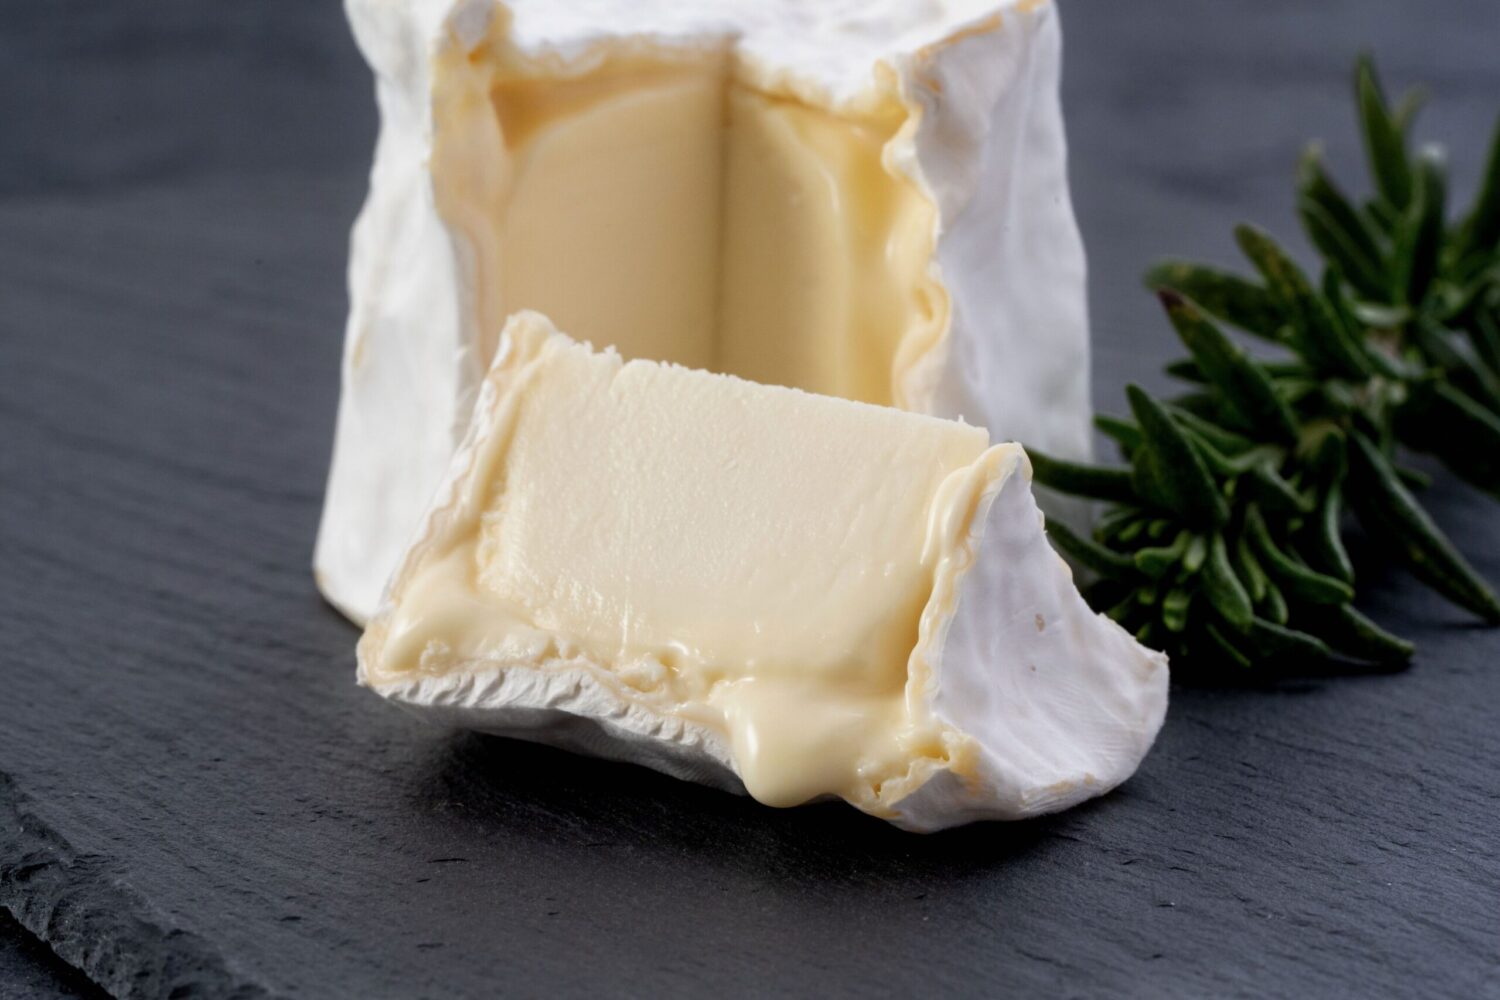 チーズ工房チカプの白カビタイプチーズ「シマエナガ」